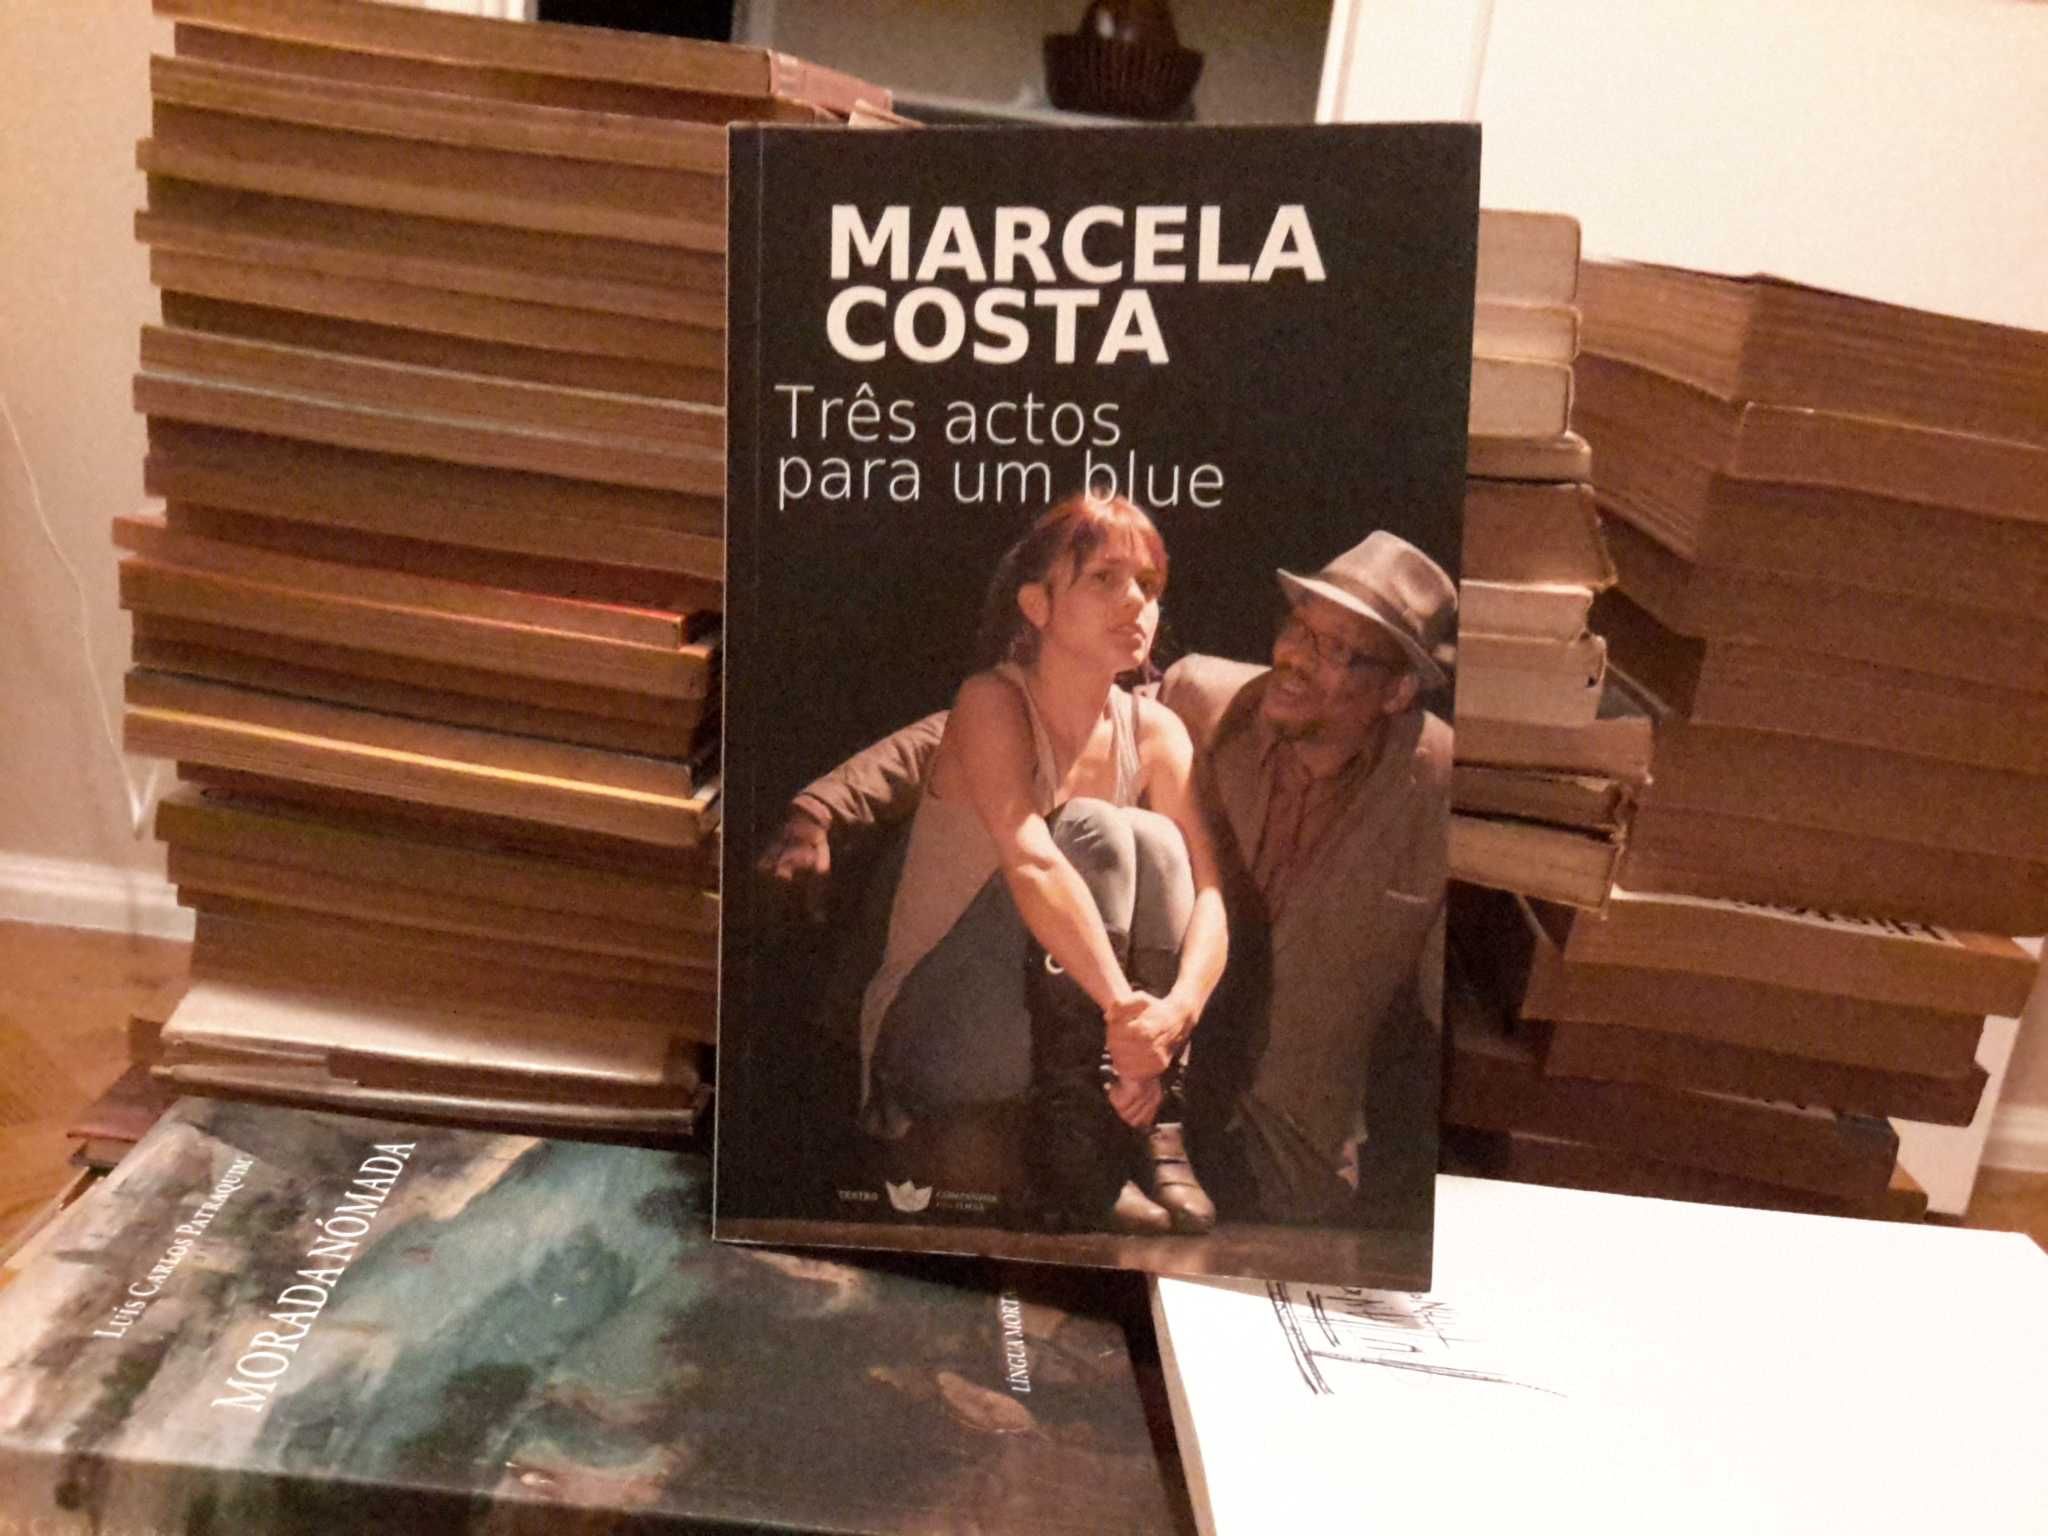 Marcela Costa - Três Actos para um Blue (teatro)